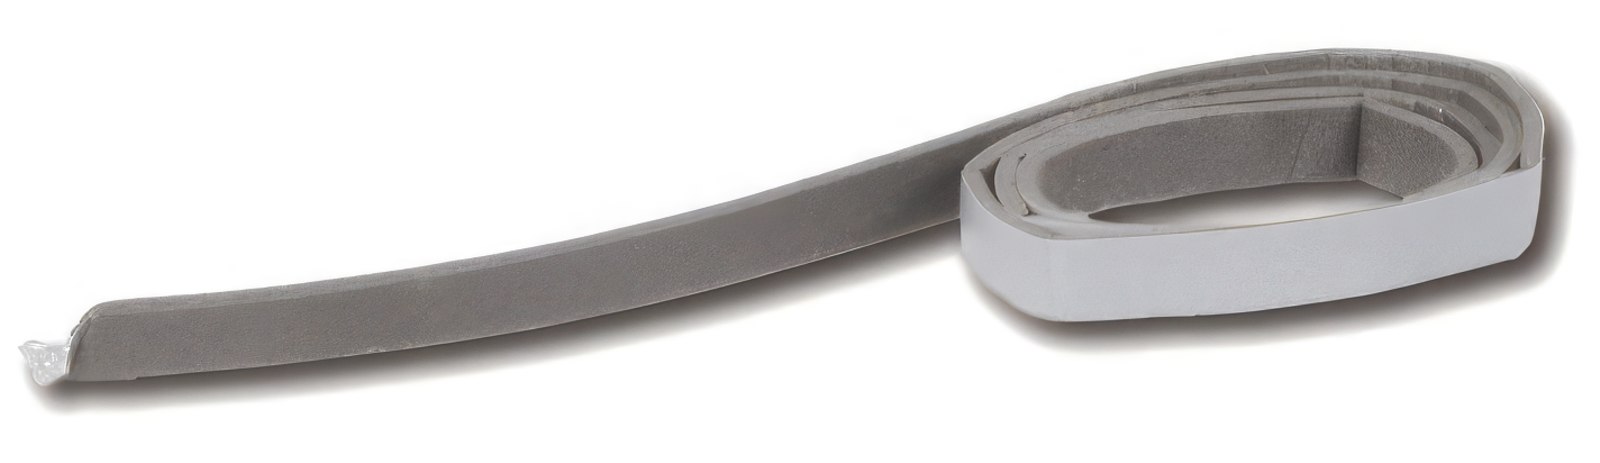 Dichtband 2 x 9 mm grau Schaumstoffband selbstklebend zur Lautsprecherabdichtung (Meterware)